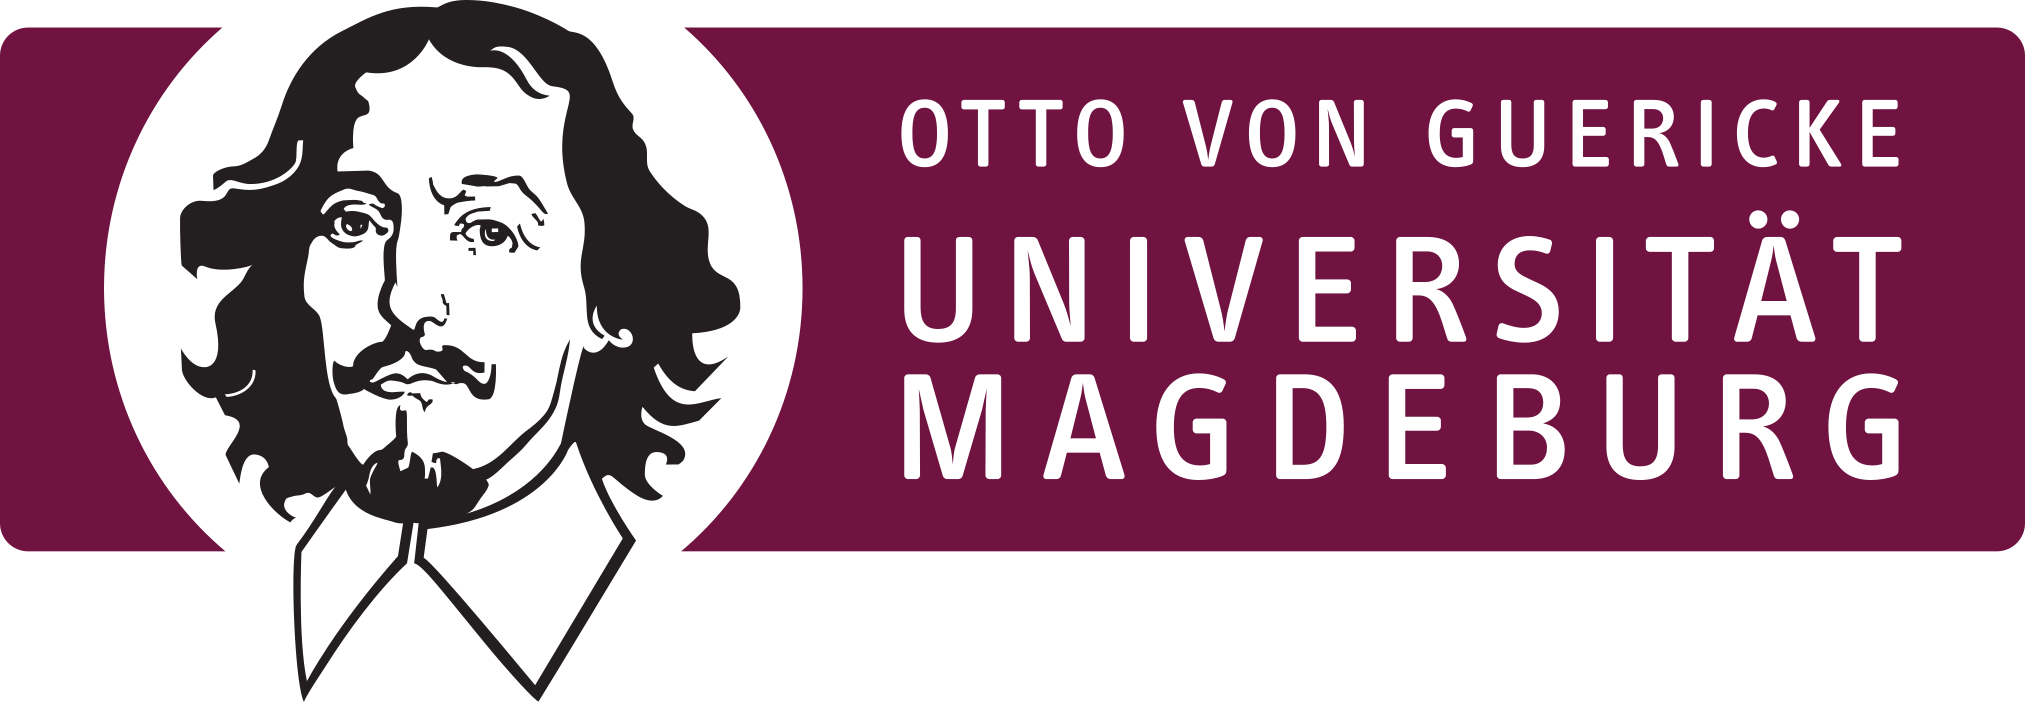 Otto von Guericke University Magdeburg - Partner university GRIAT